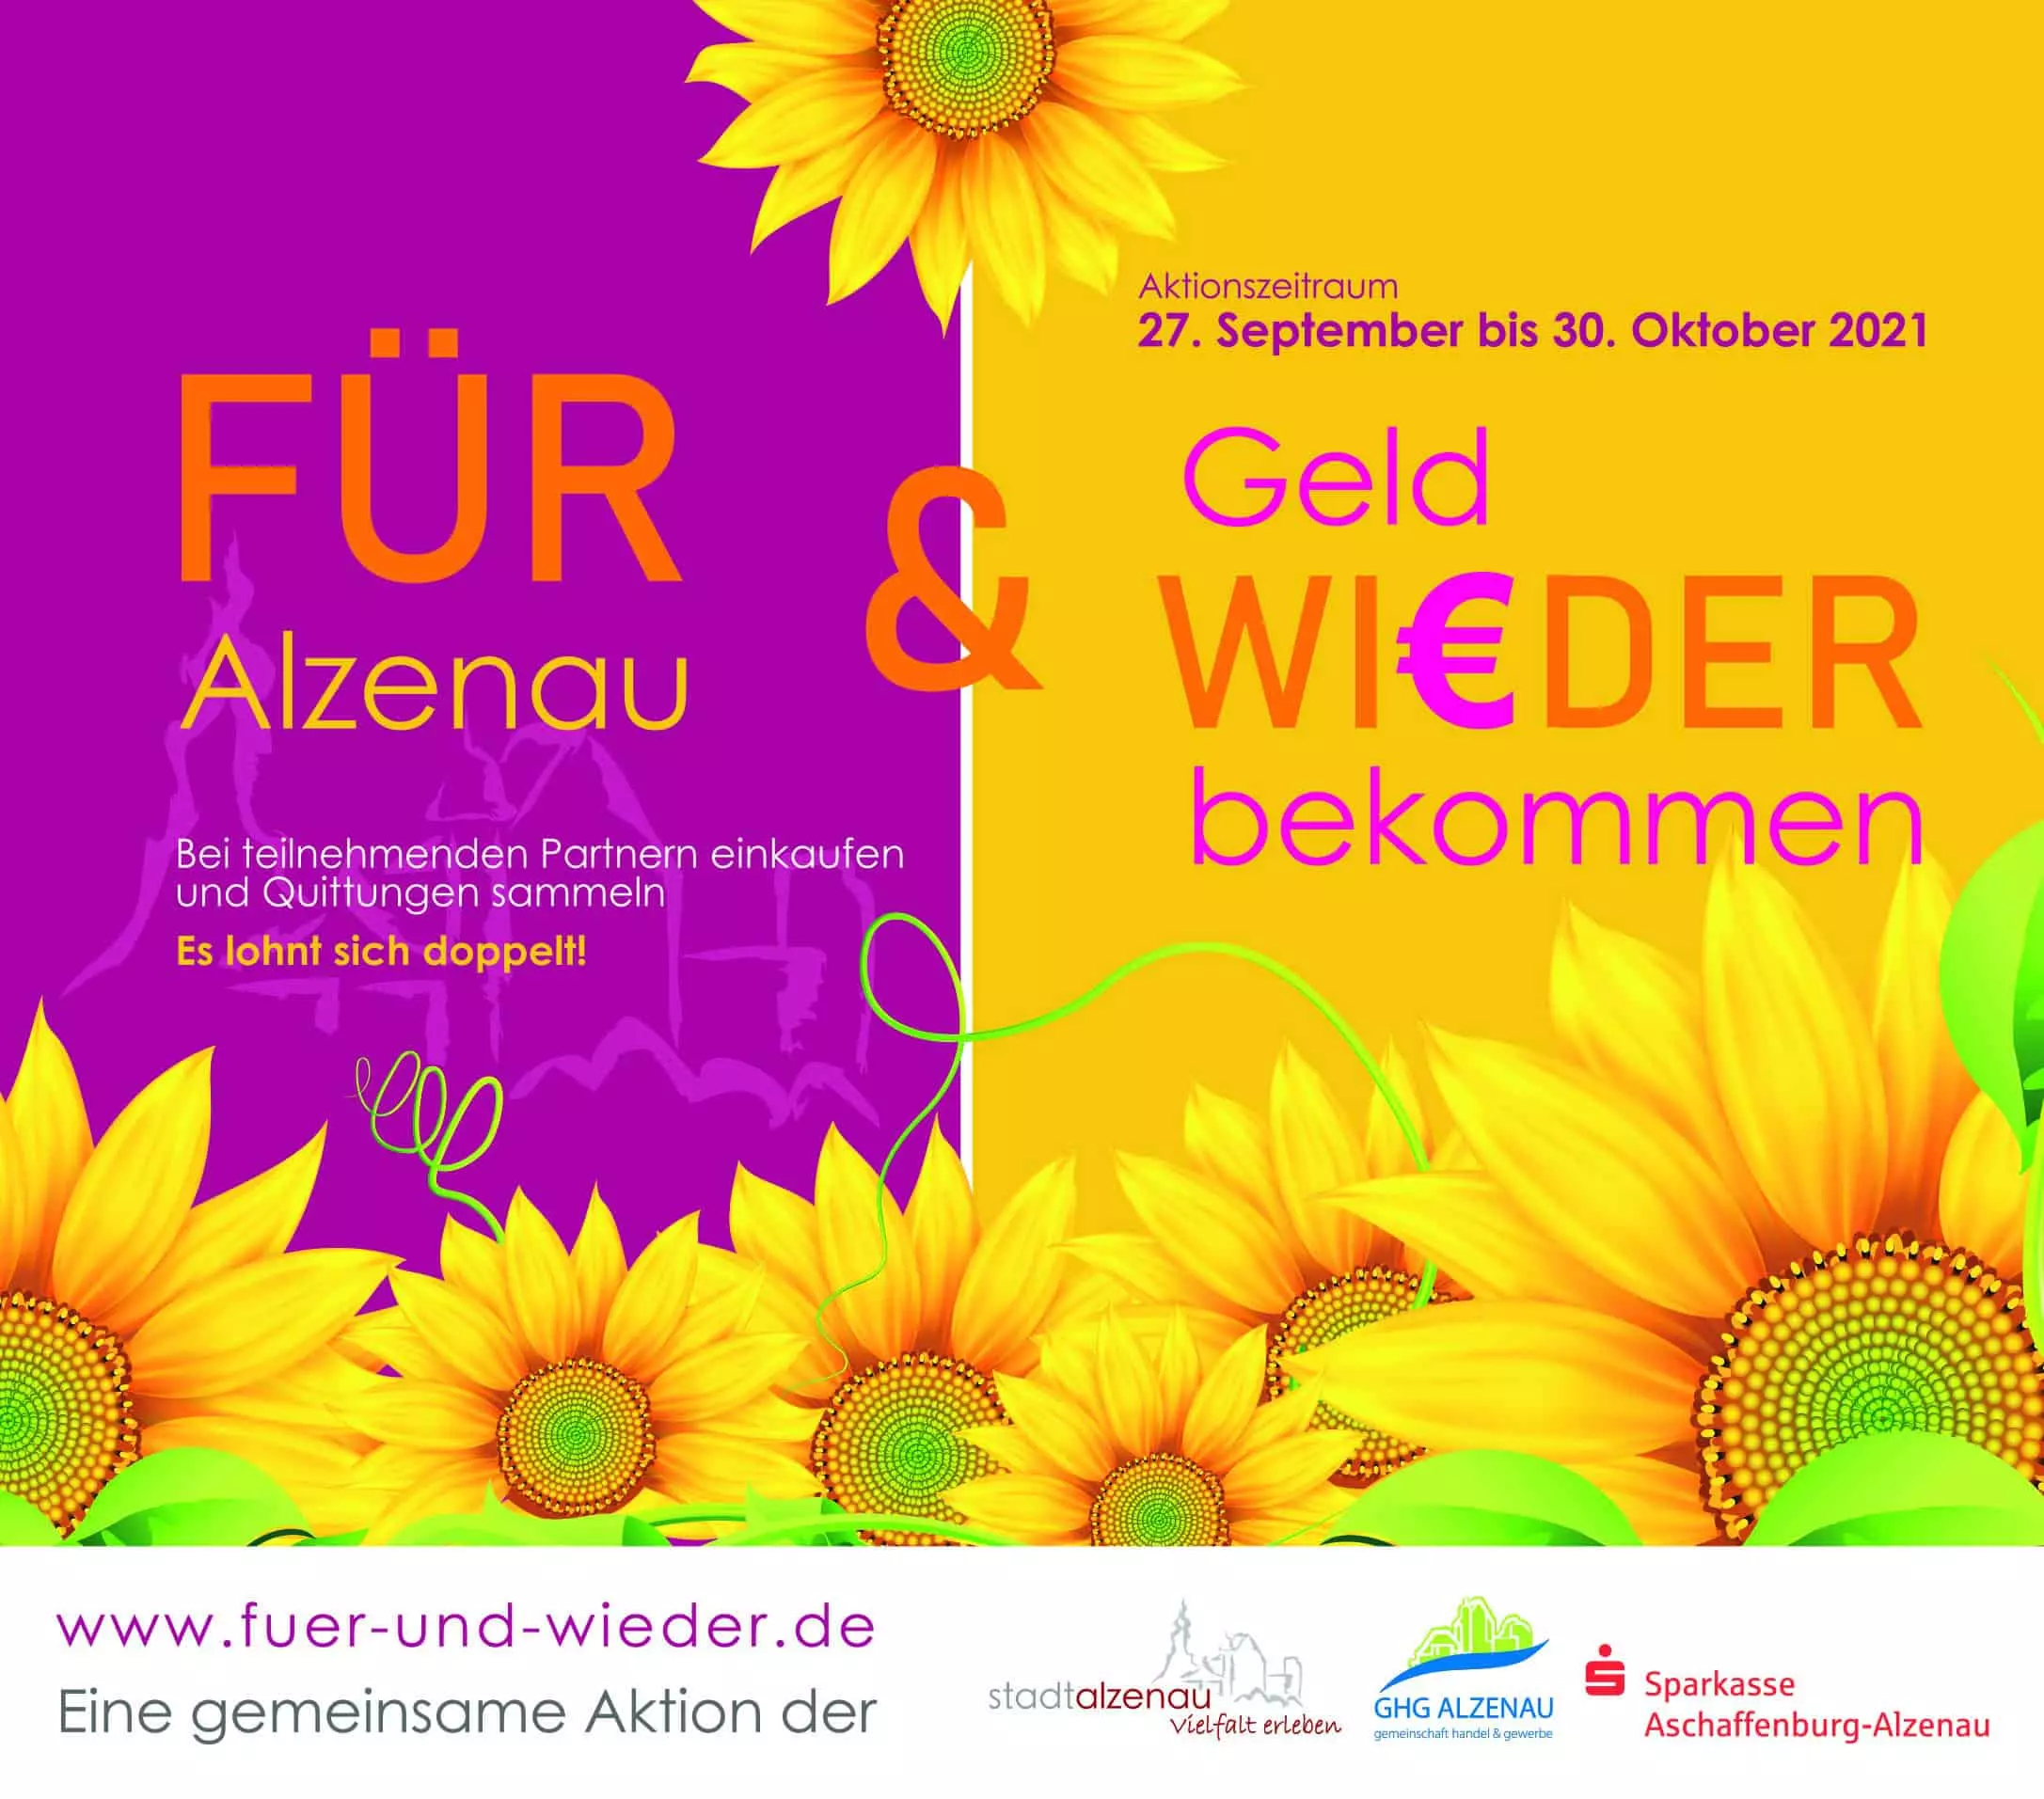 Ein Poster mit Sonnenblumen und den Worten Fur & Gold Weder.